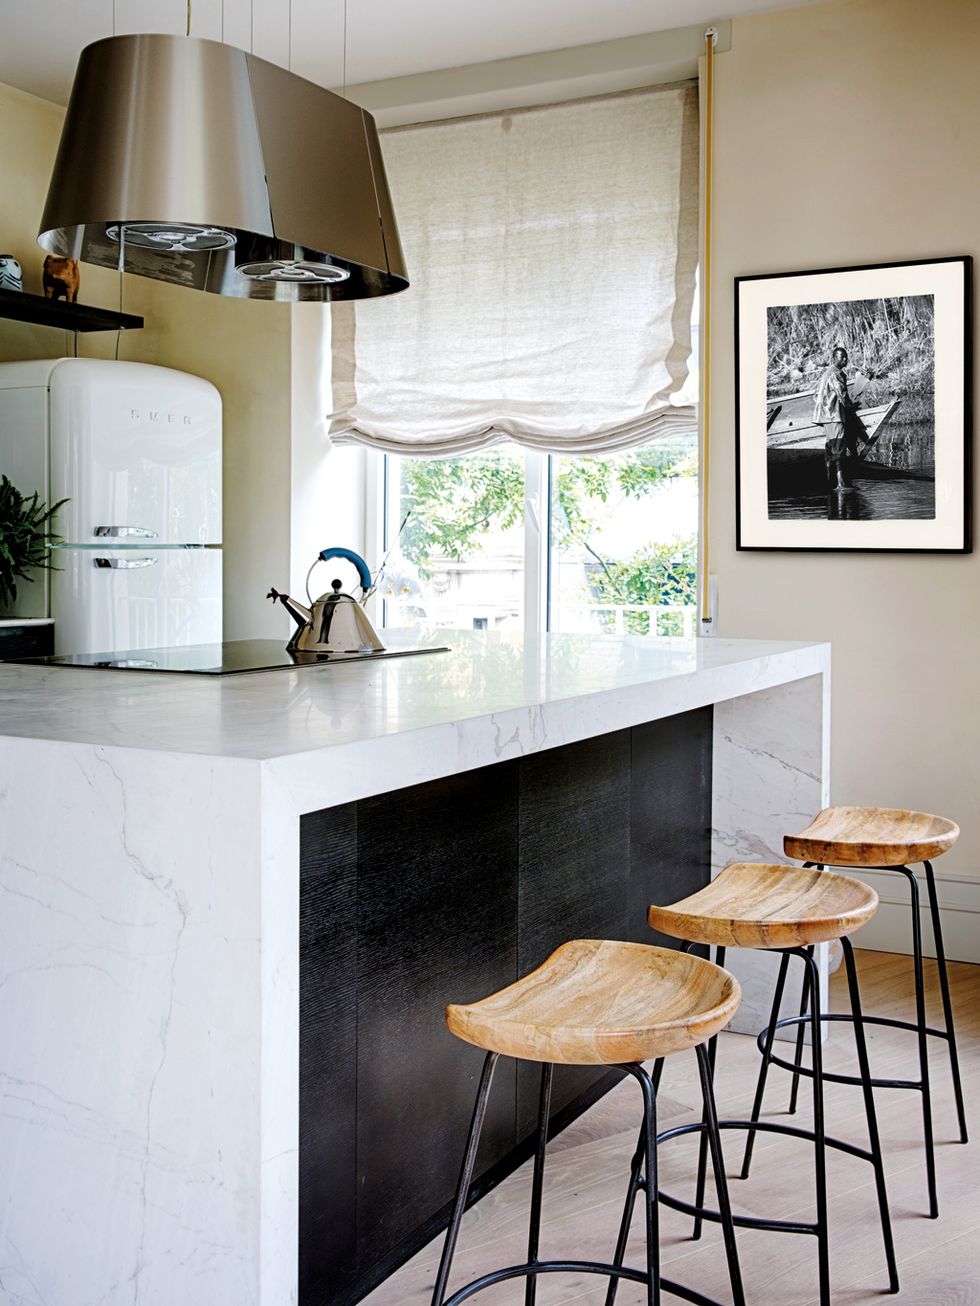 19 ideas con encanto para poner cortinas en tu cocina